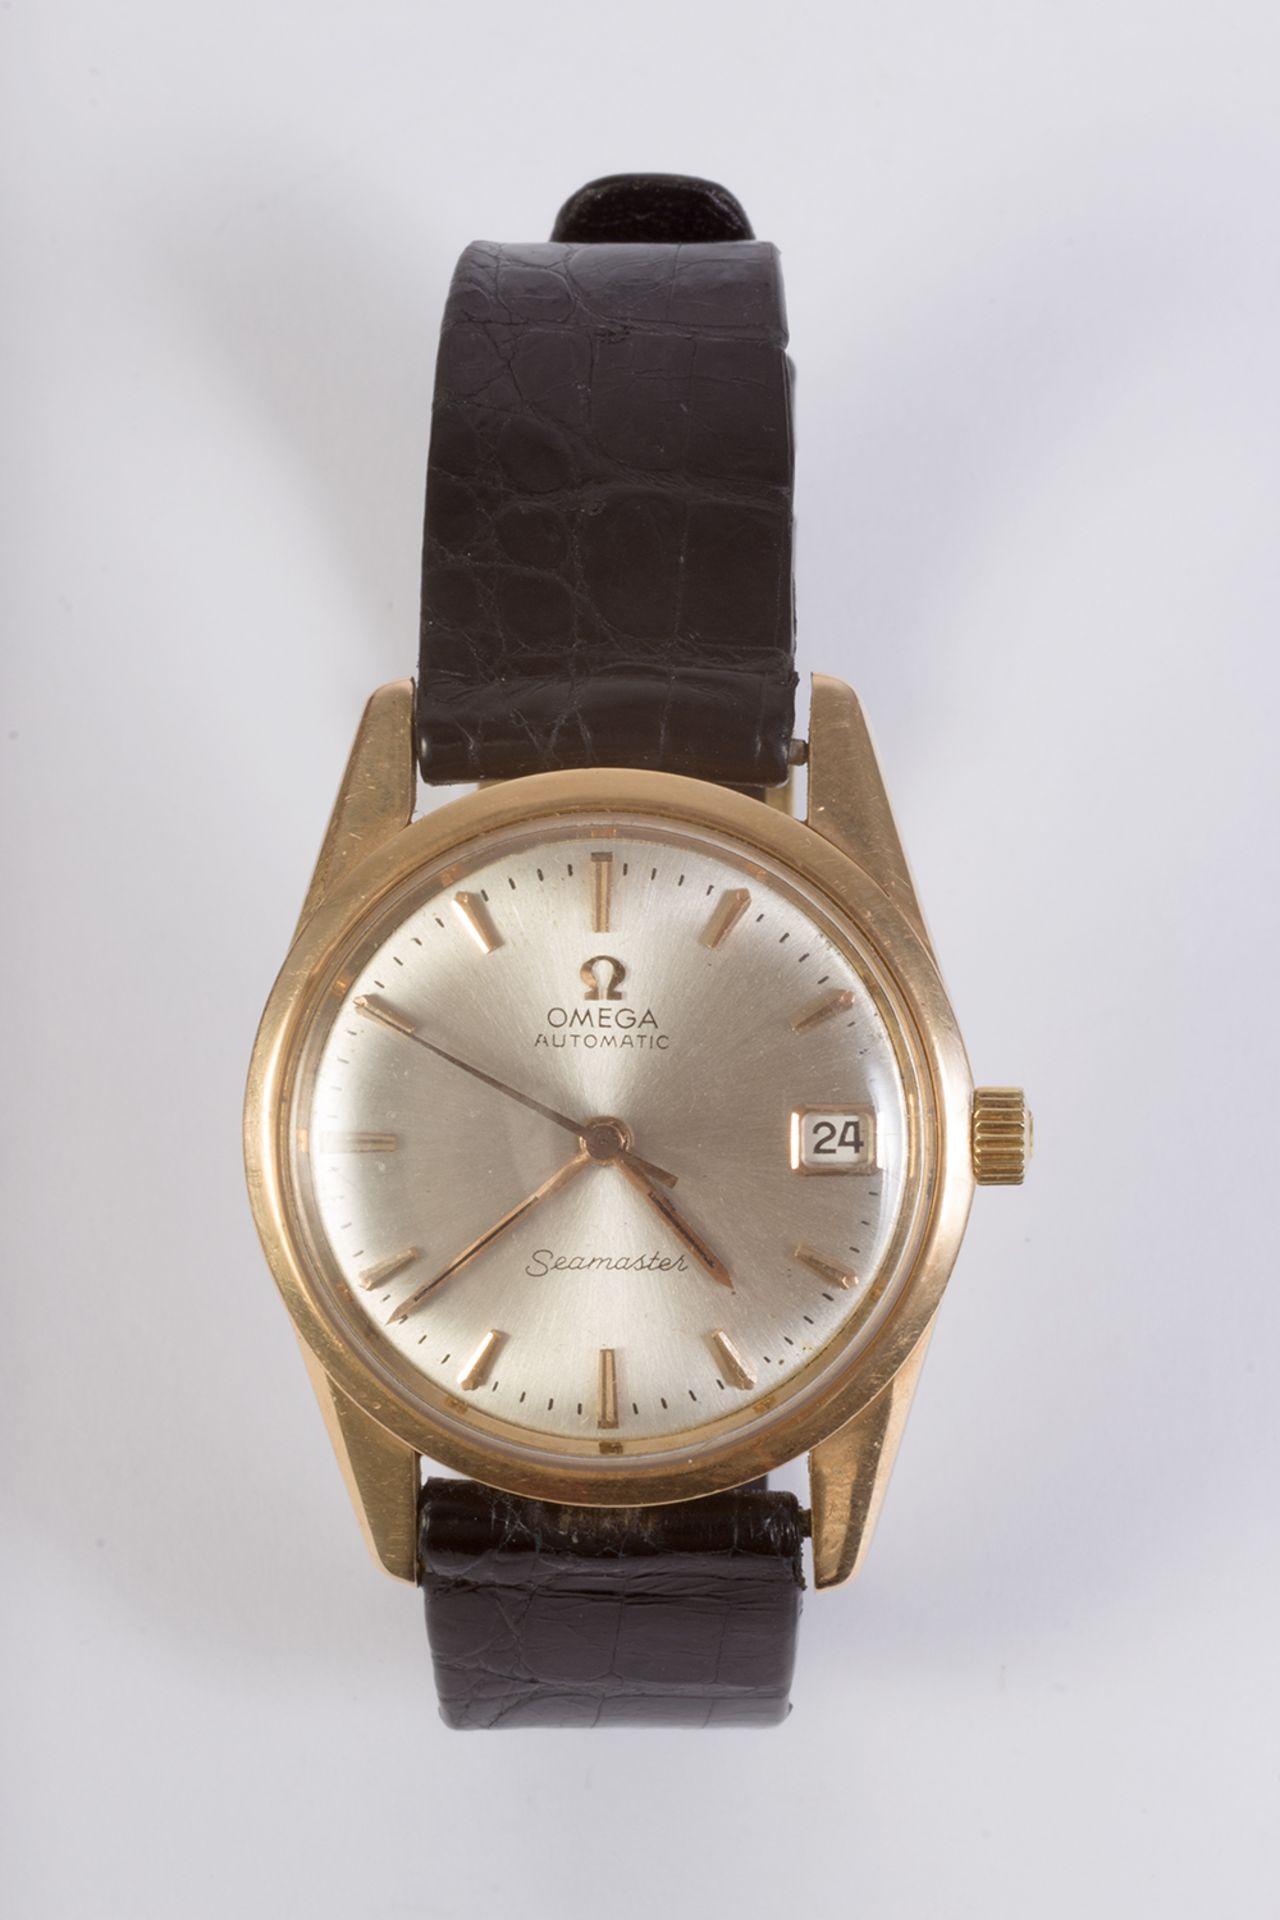 Reloj de pulsera Omega, modelo Seamaster, en oro y correa de piel.